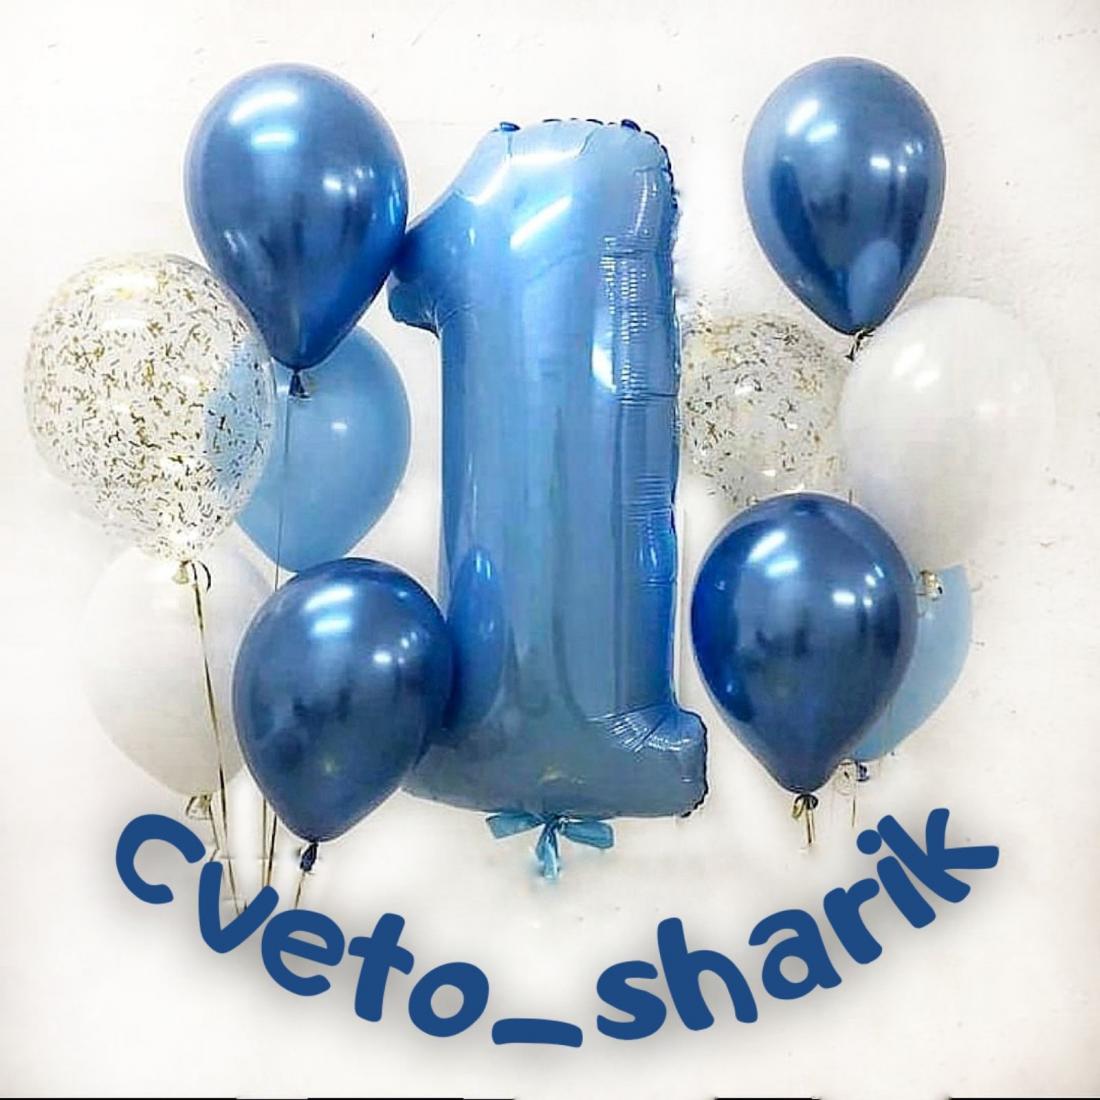 Гелиевые, воздушные шары от 0,30 р/шт, фольгированные, шары-гиганты, "Bubbles" от 9 р/шт. от "Cveto_sharik"